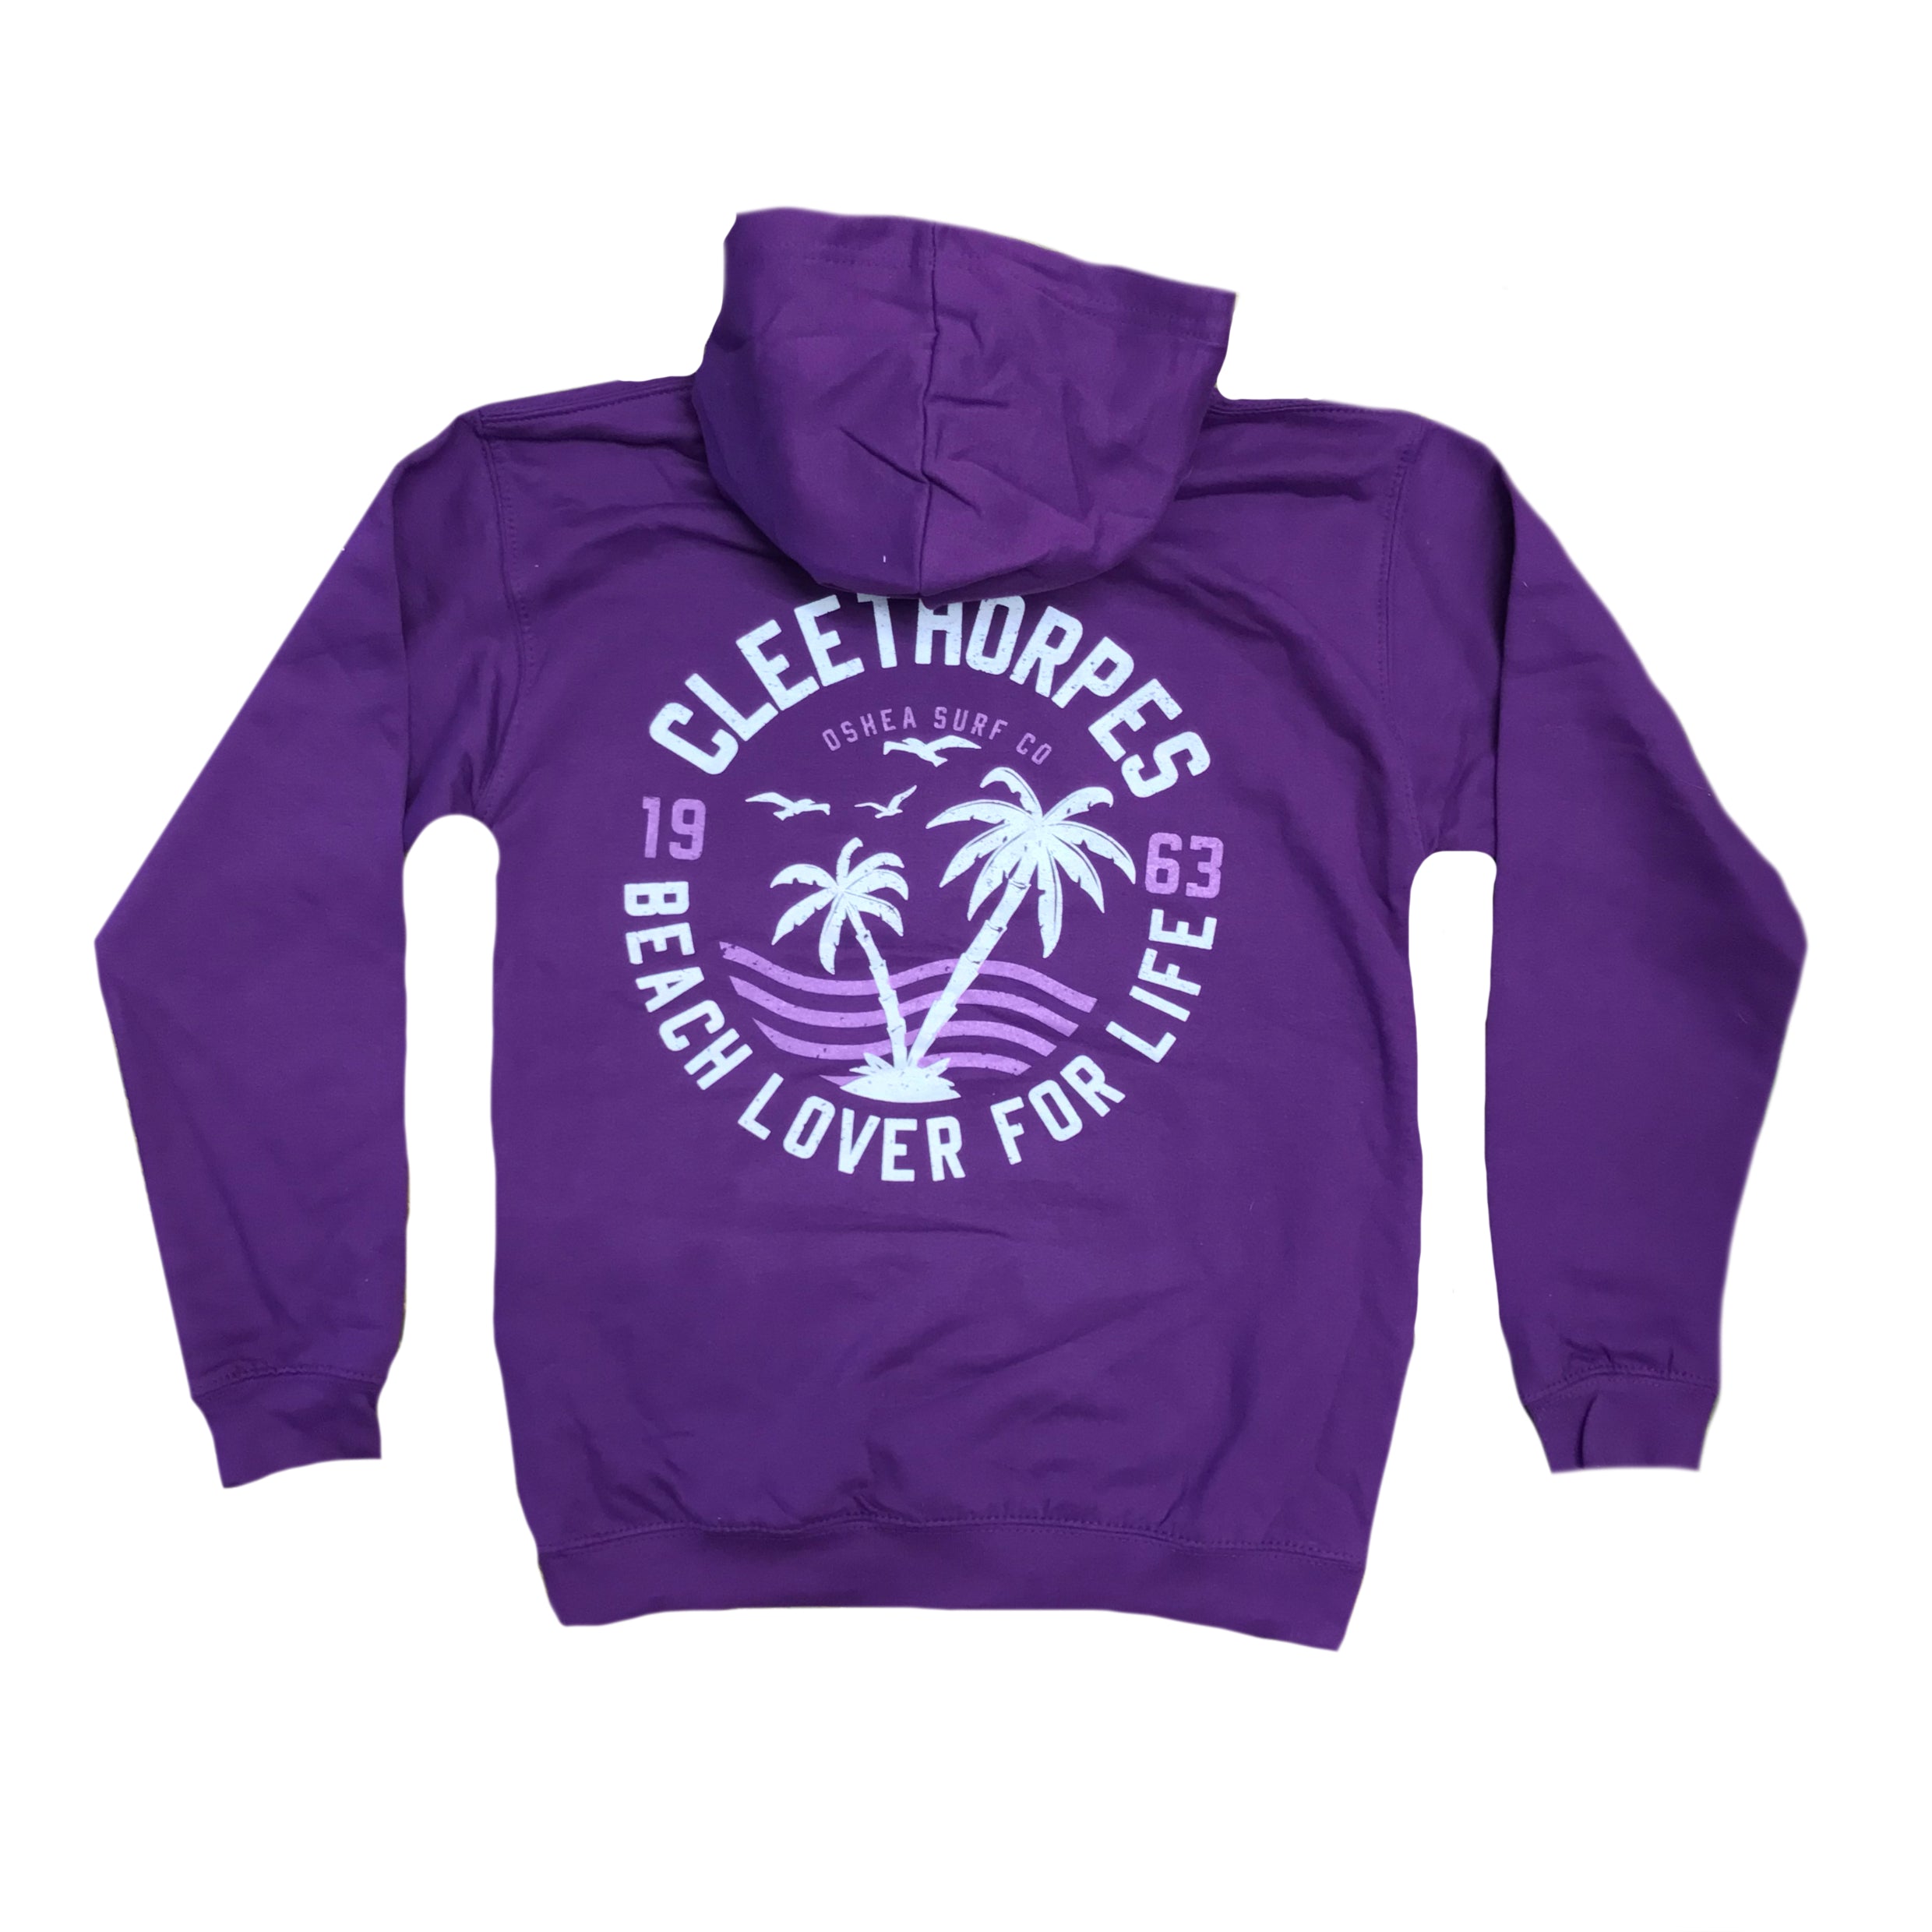 Cleethorpes Purple Kids Hoody